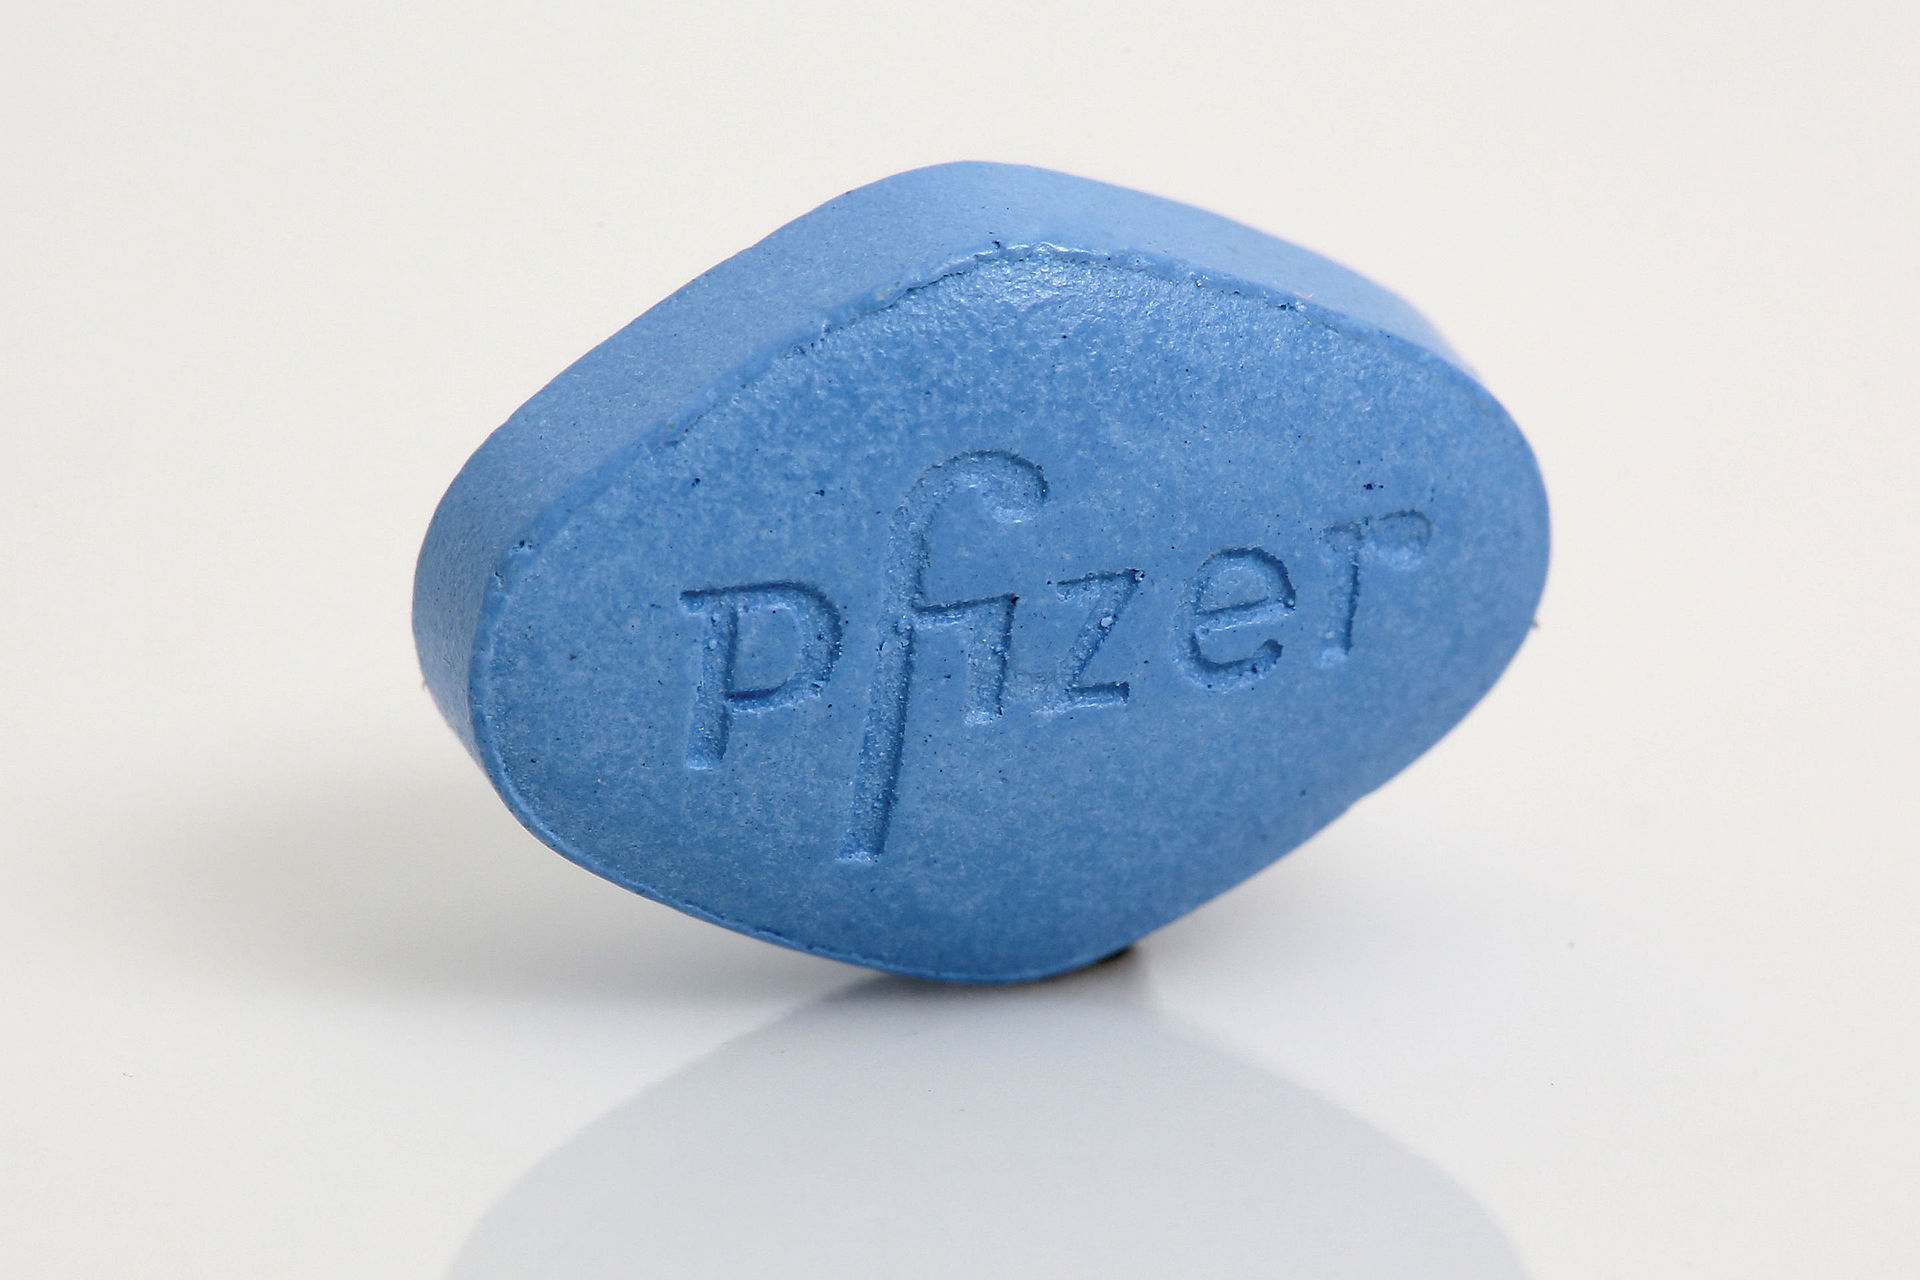 La pilule bleue originale – le Viagra